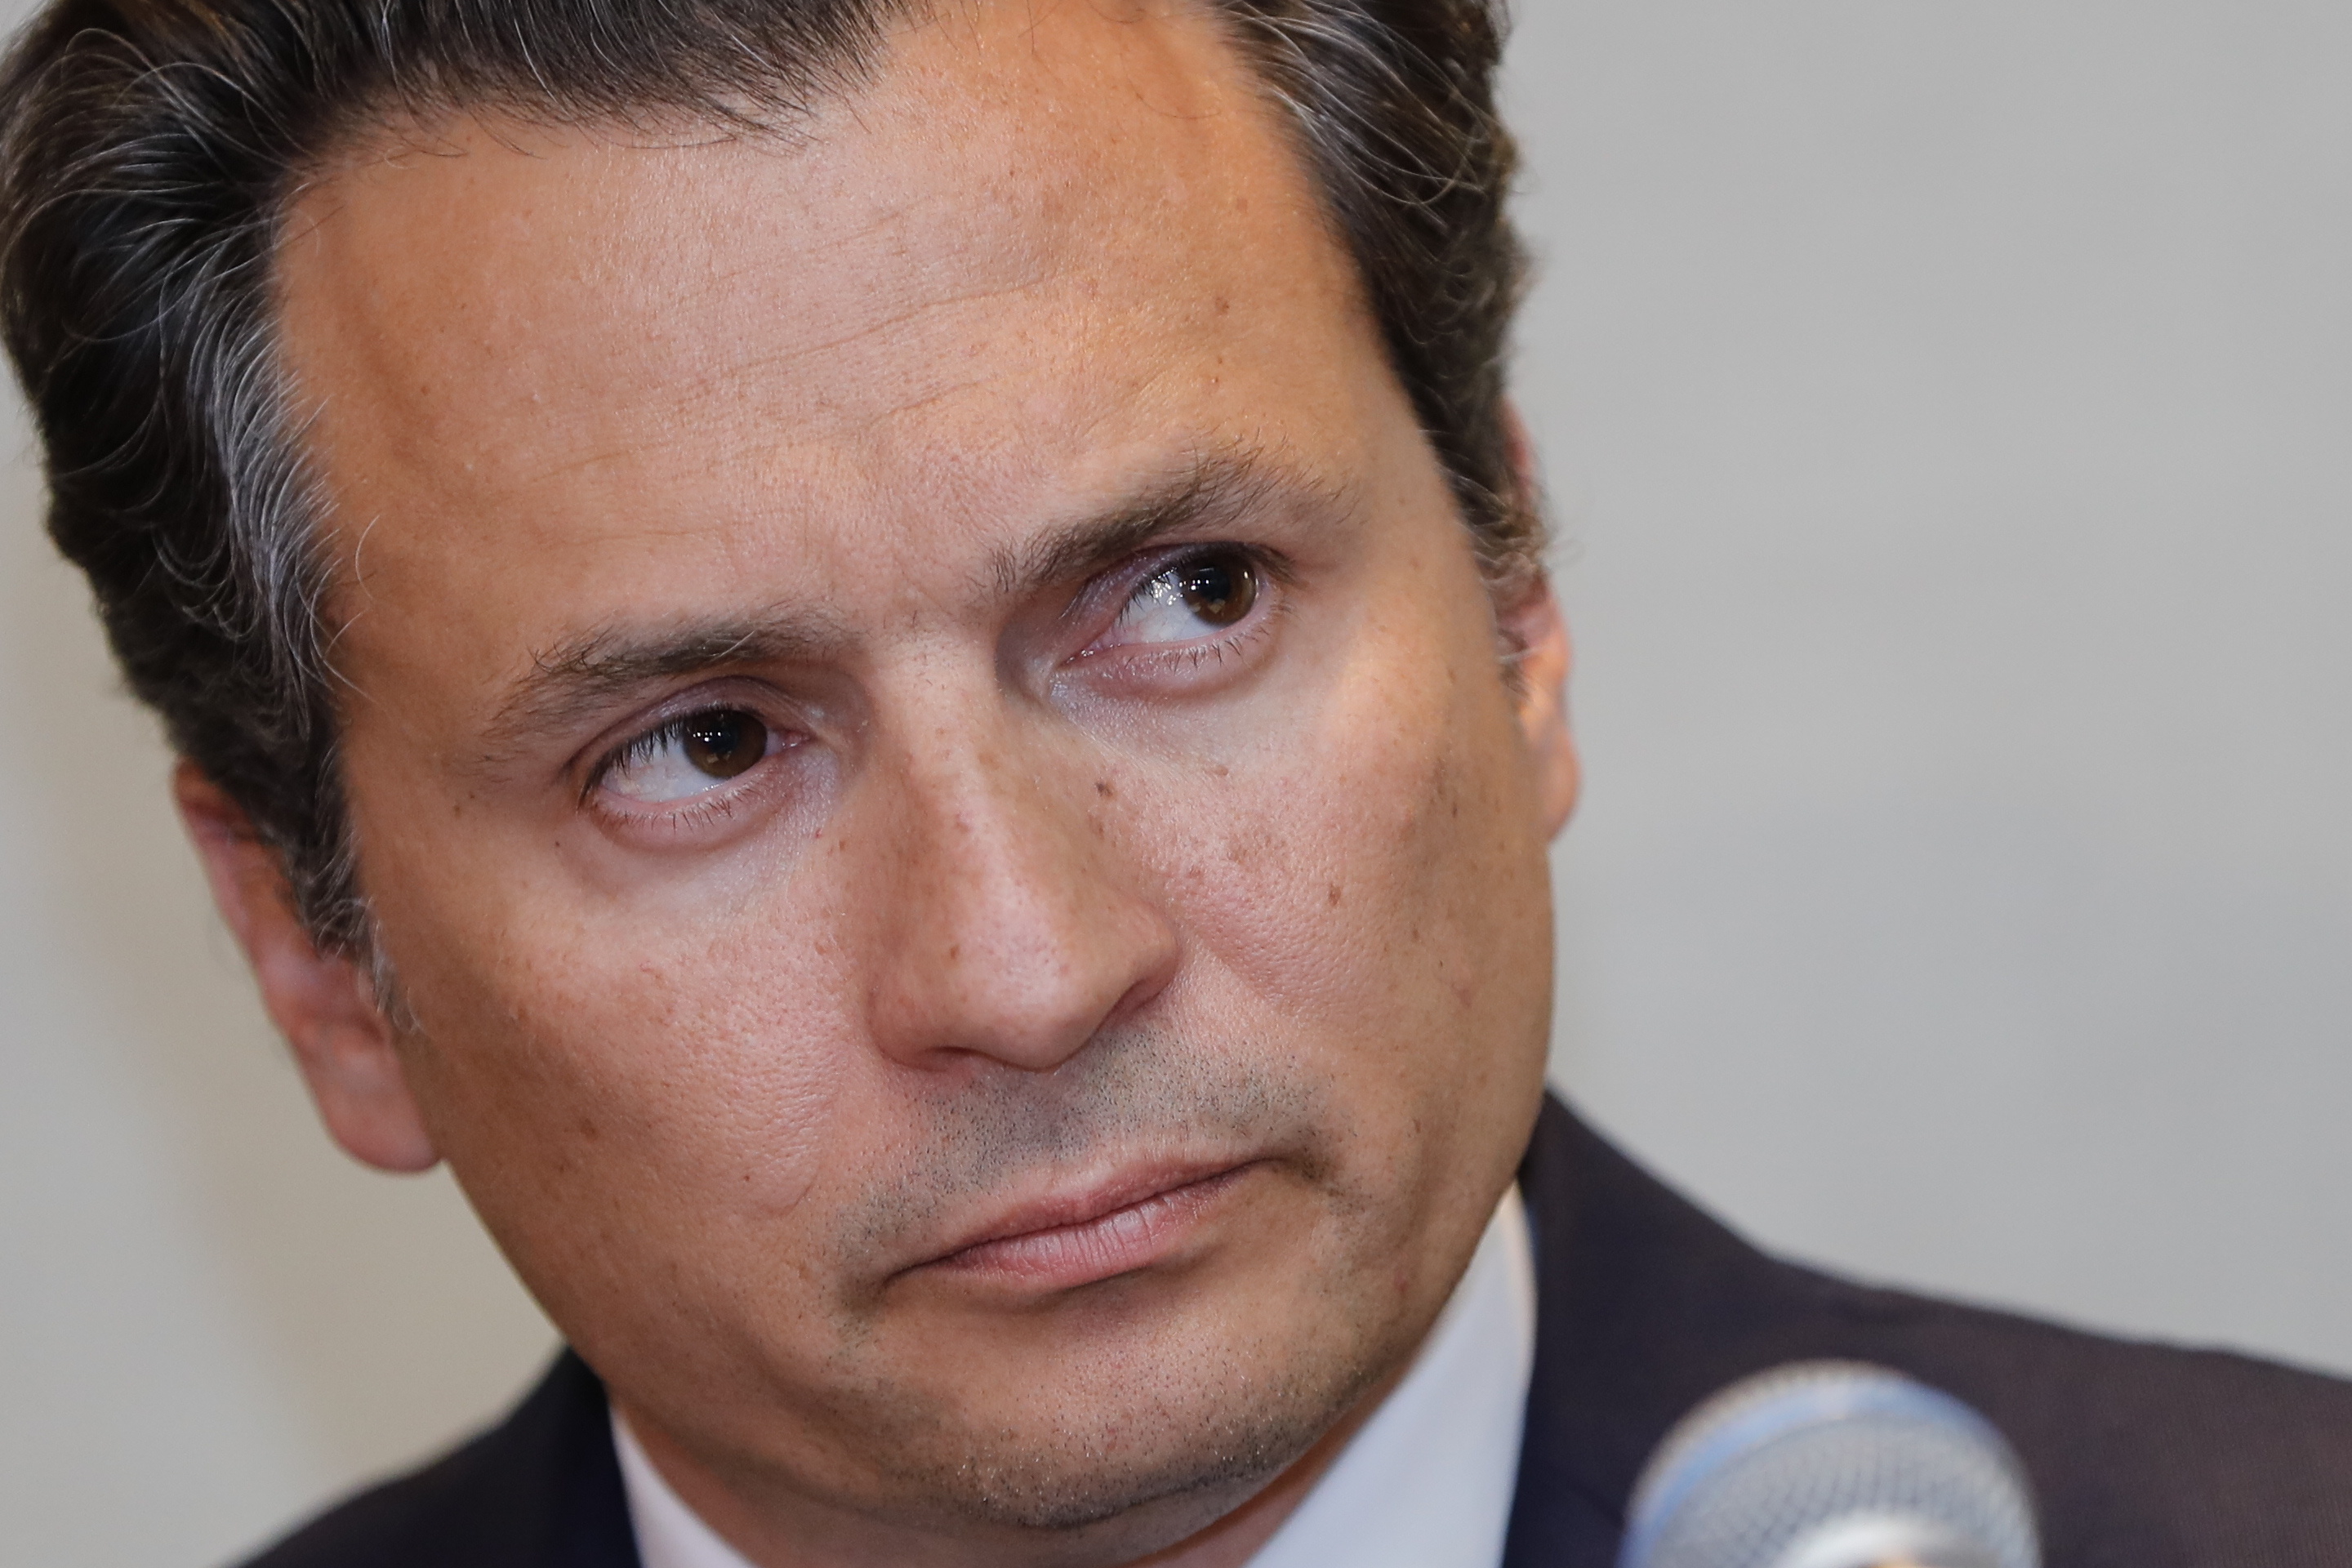 El exdirector de Petróleos Mexicanos Emilio Lozoya es acusado de corrupción y enfrenta un par de procesos penales. EFE/José Méndez
